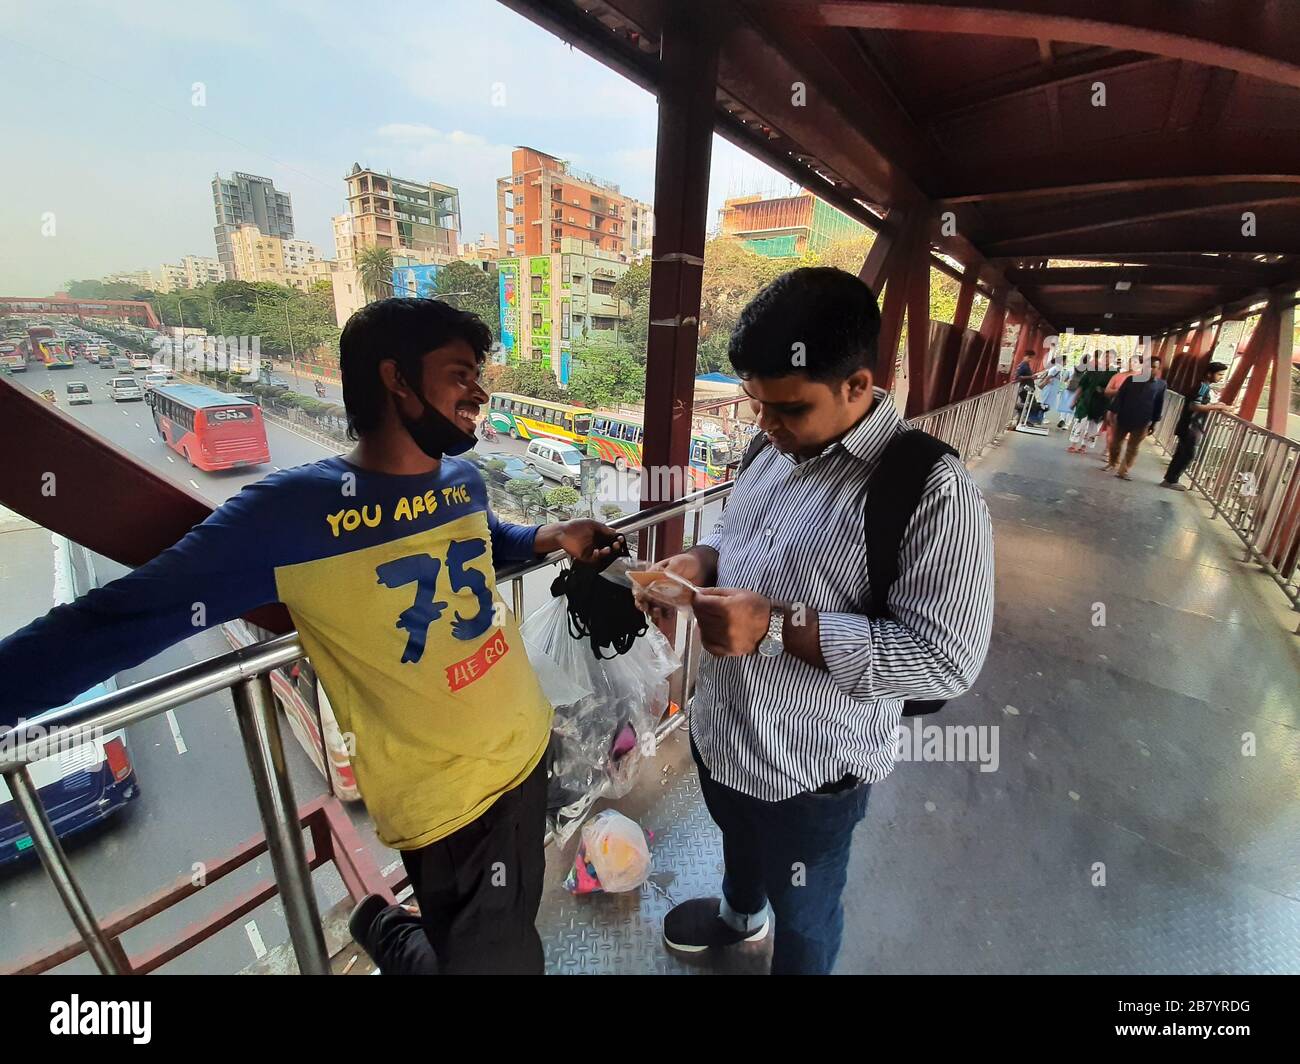 Un cliente che contrattava con un falco di maschera per bye maschera da lui a Banani, Dhaka. A causa del virus Corona, la domanda di maschera è attualmente alla massima richiesta. Foto Stock